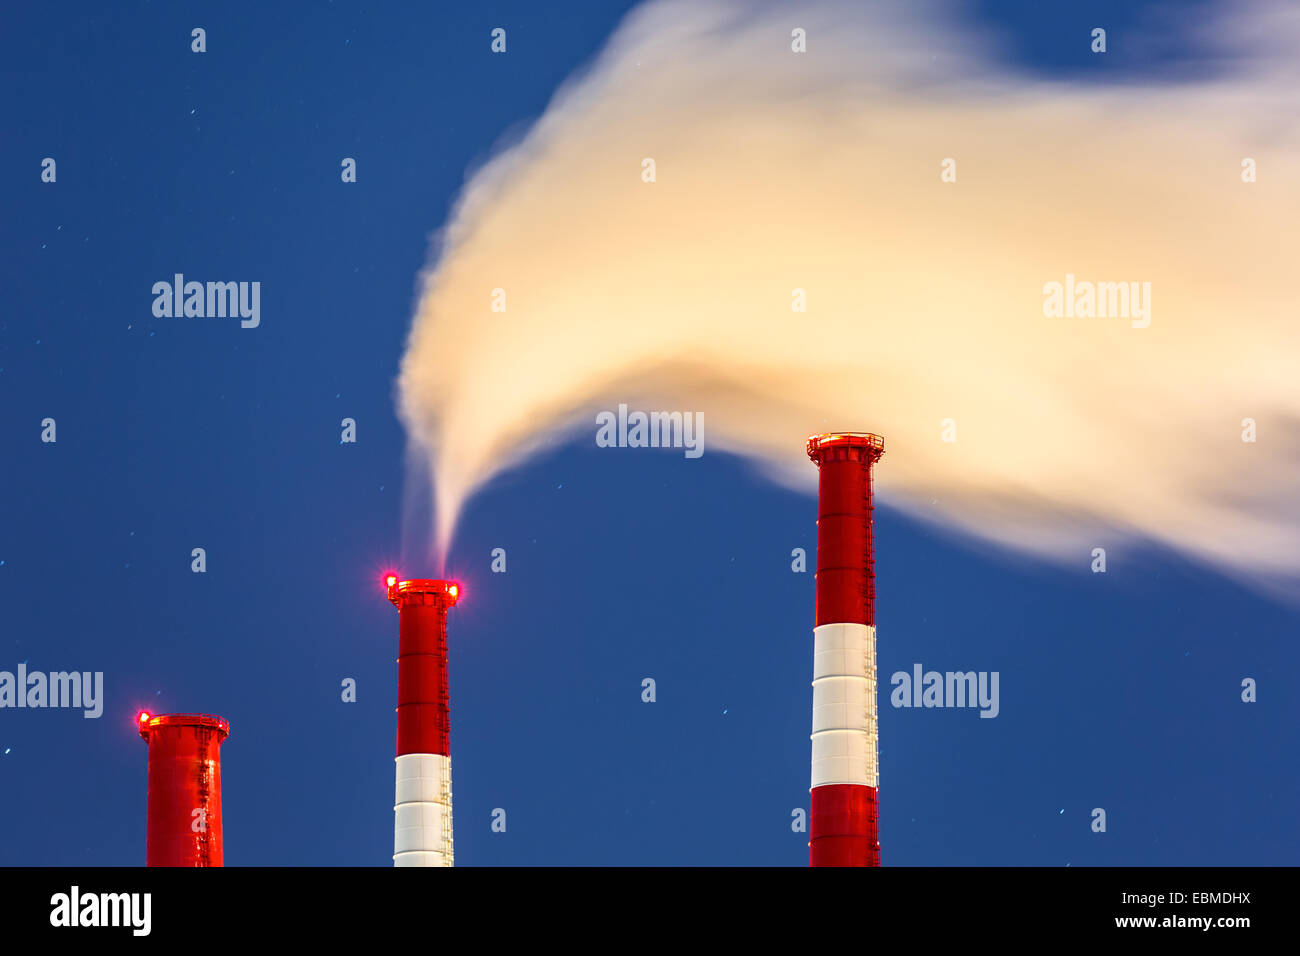 Power Station chimeneas con una nube de vapor impulsada por el viento en una fría noche de invierno estrellado. Foto de stock